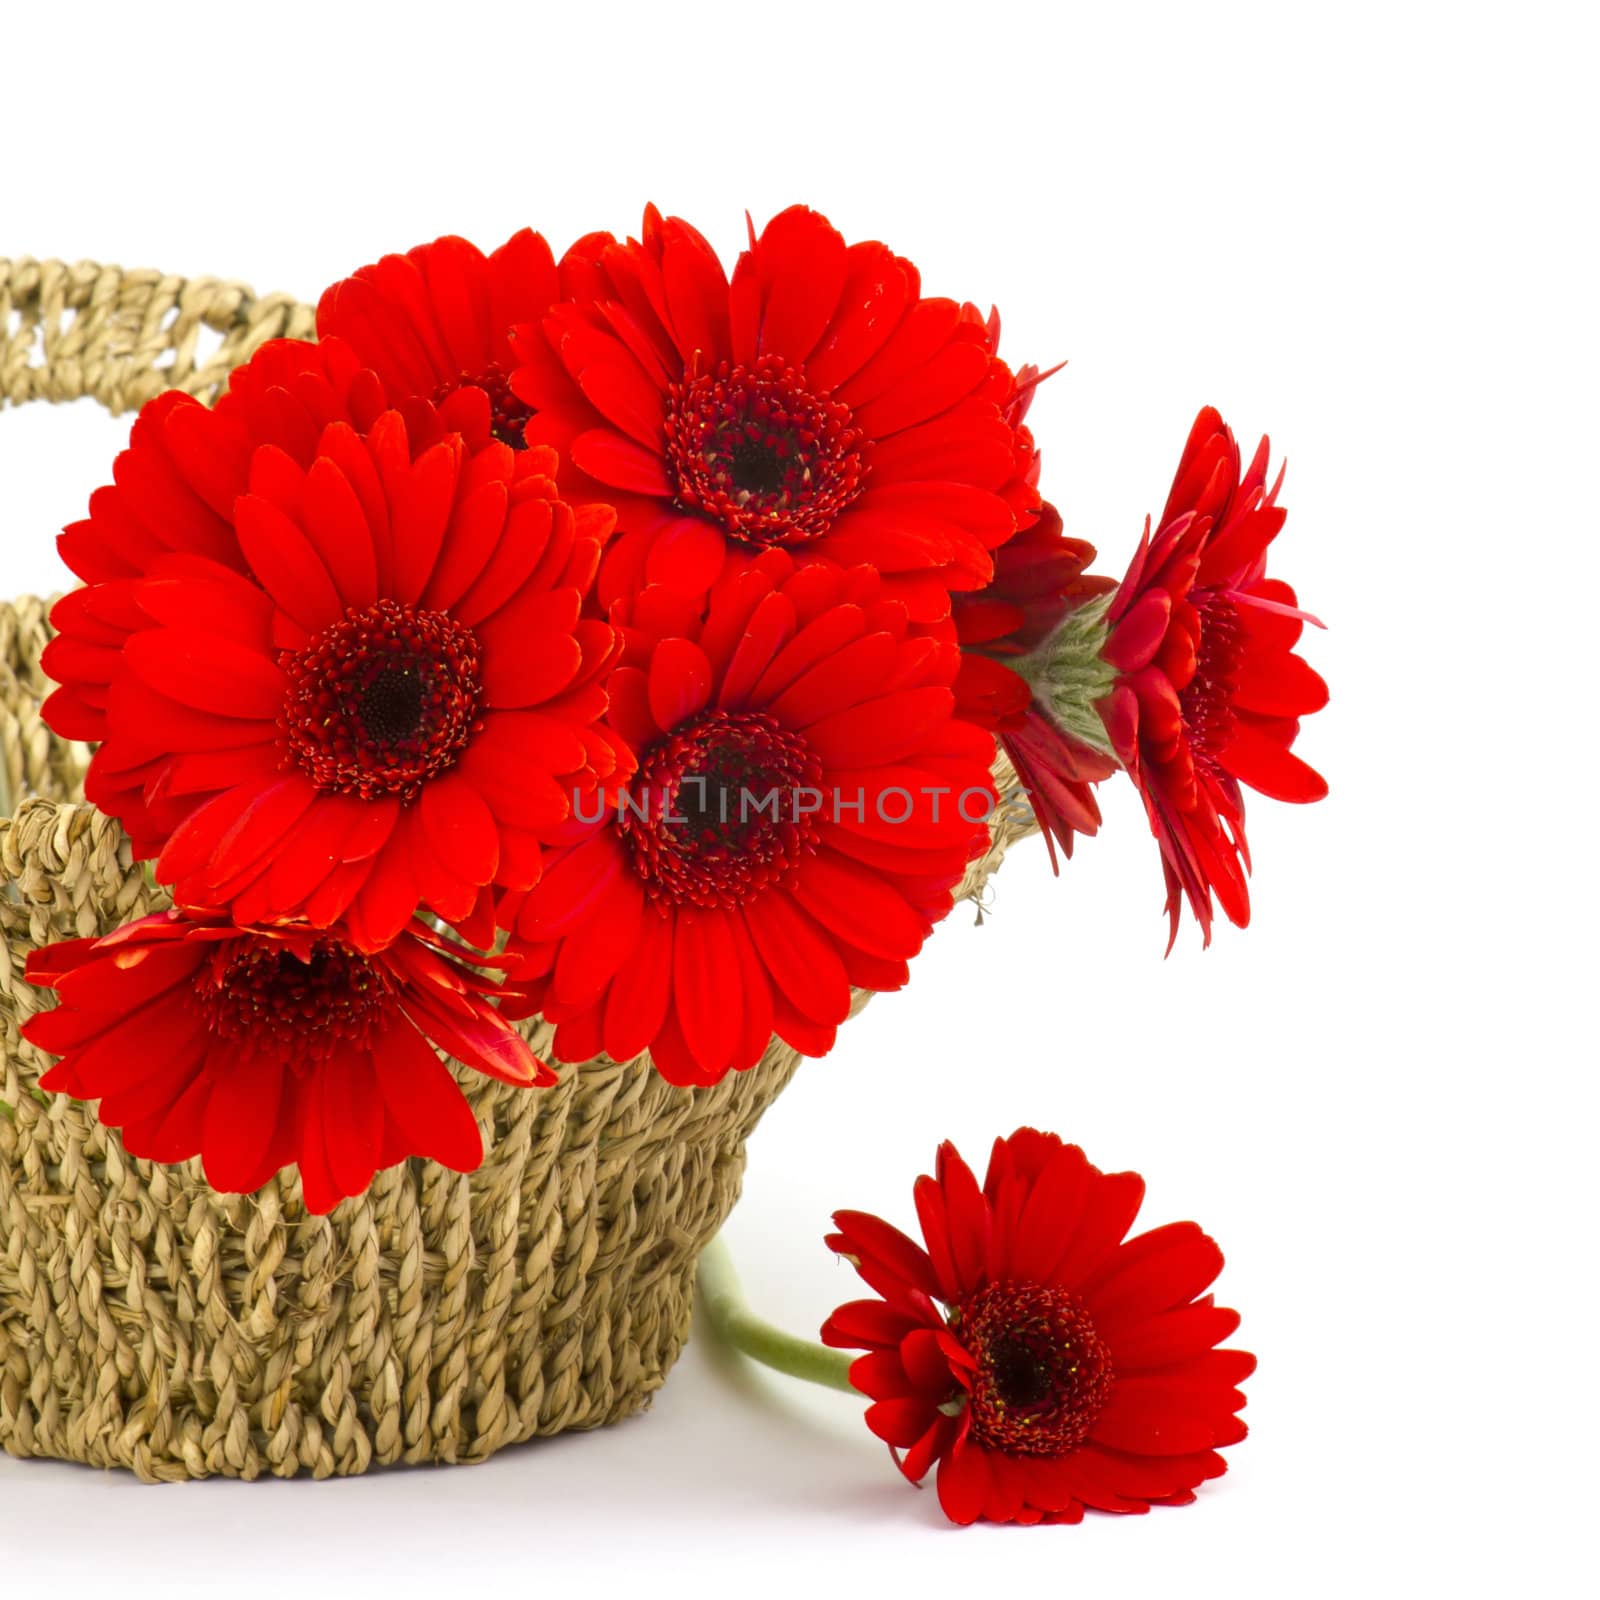 gerbera flowers in a basket by miradrozdowski